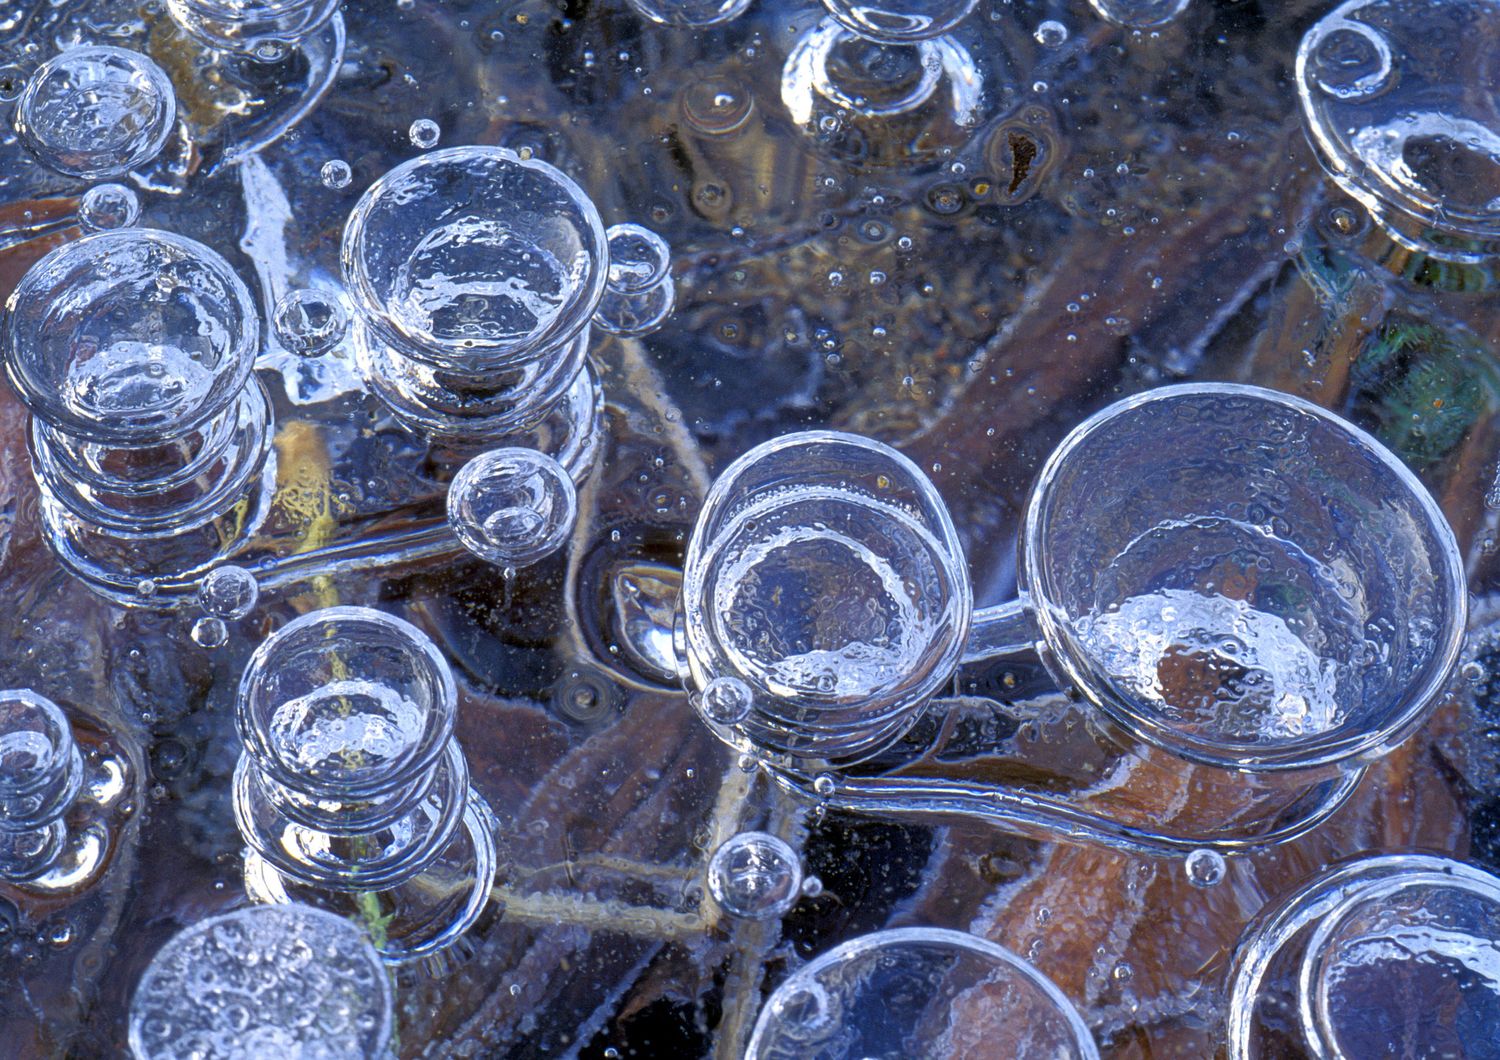 Bolle di metano nel ghiaccio, prodotte dalla decomposizione di organismi sul fondo di uno stagno